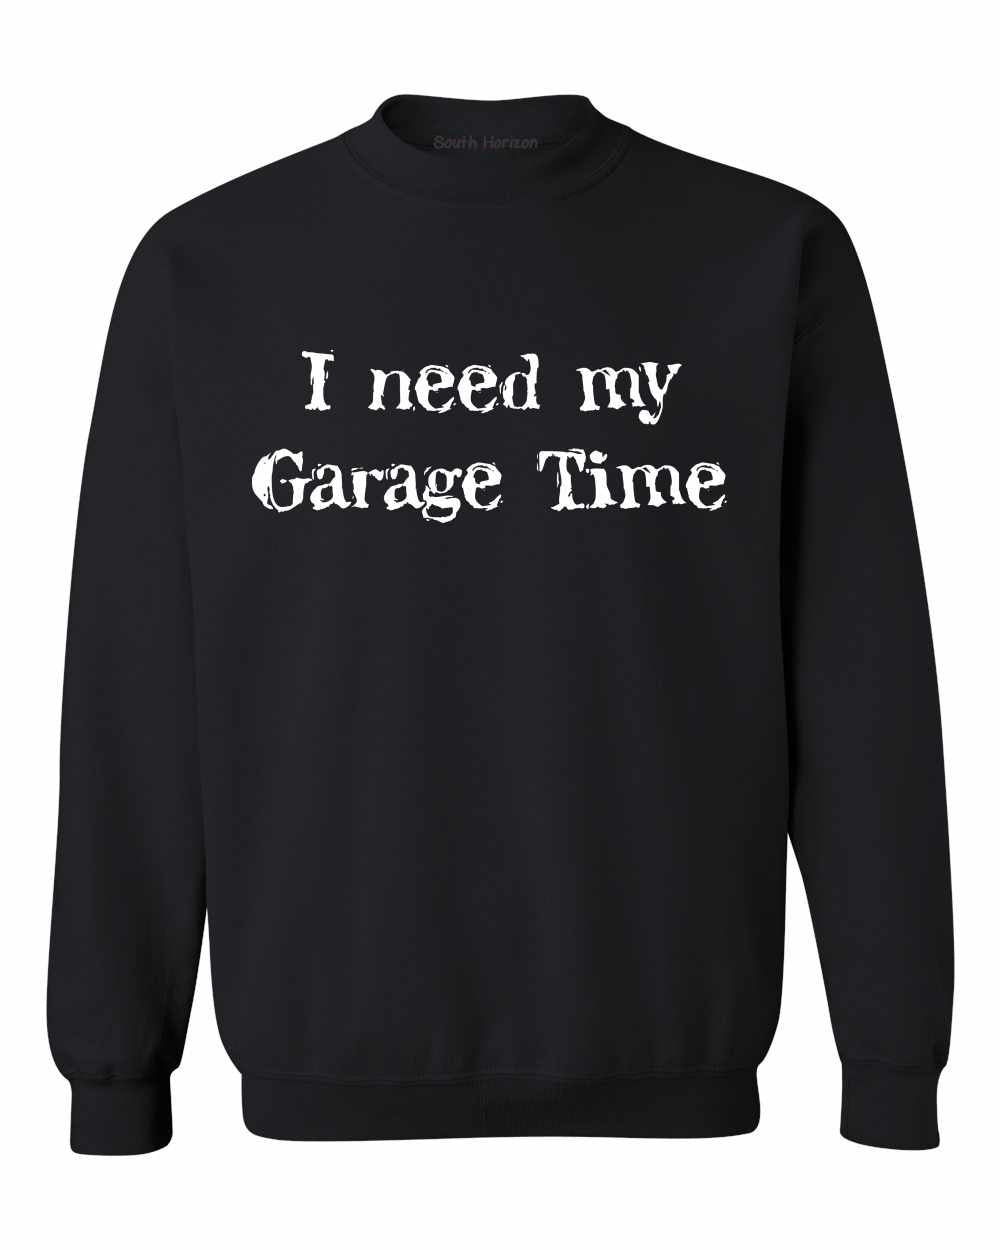 I Need My Garage Time on SweatShirt (#470-11)